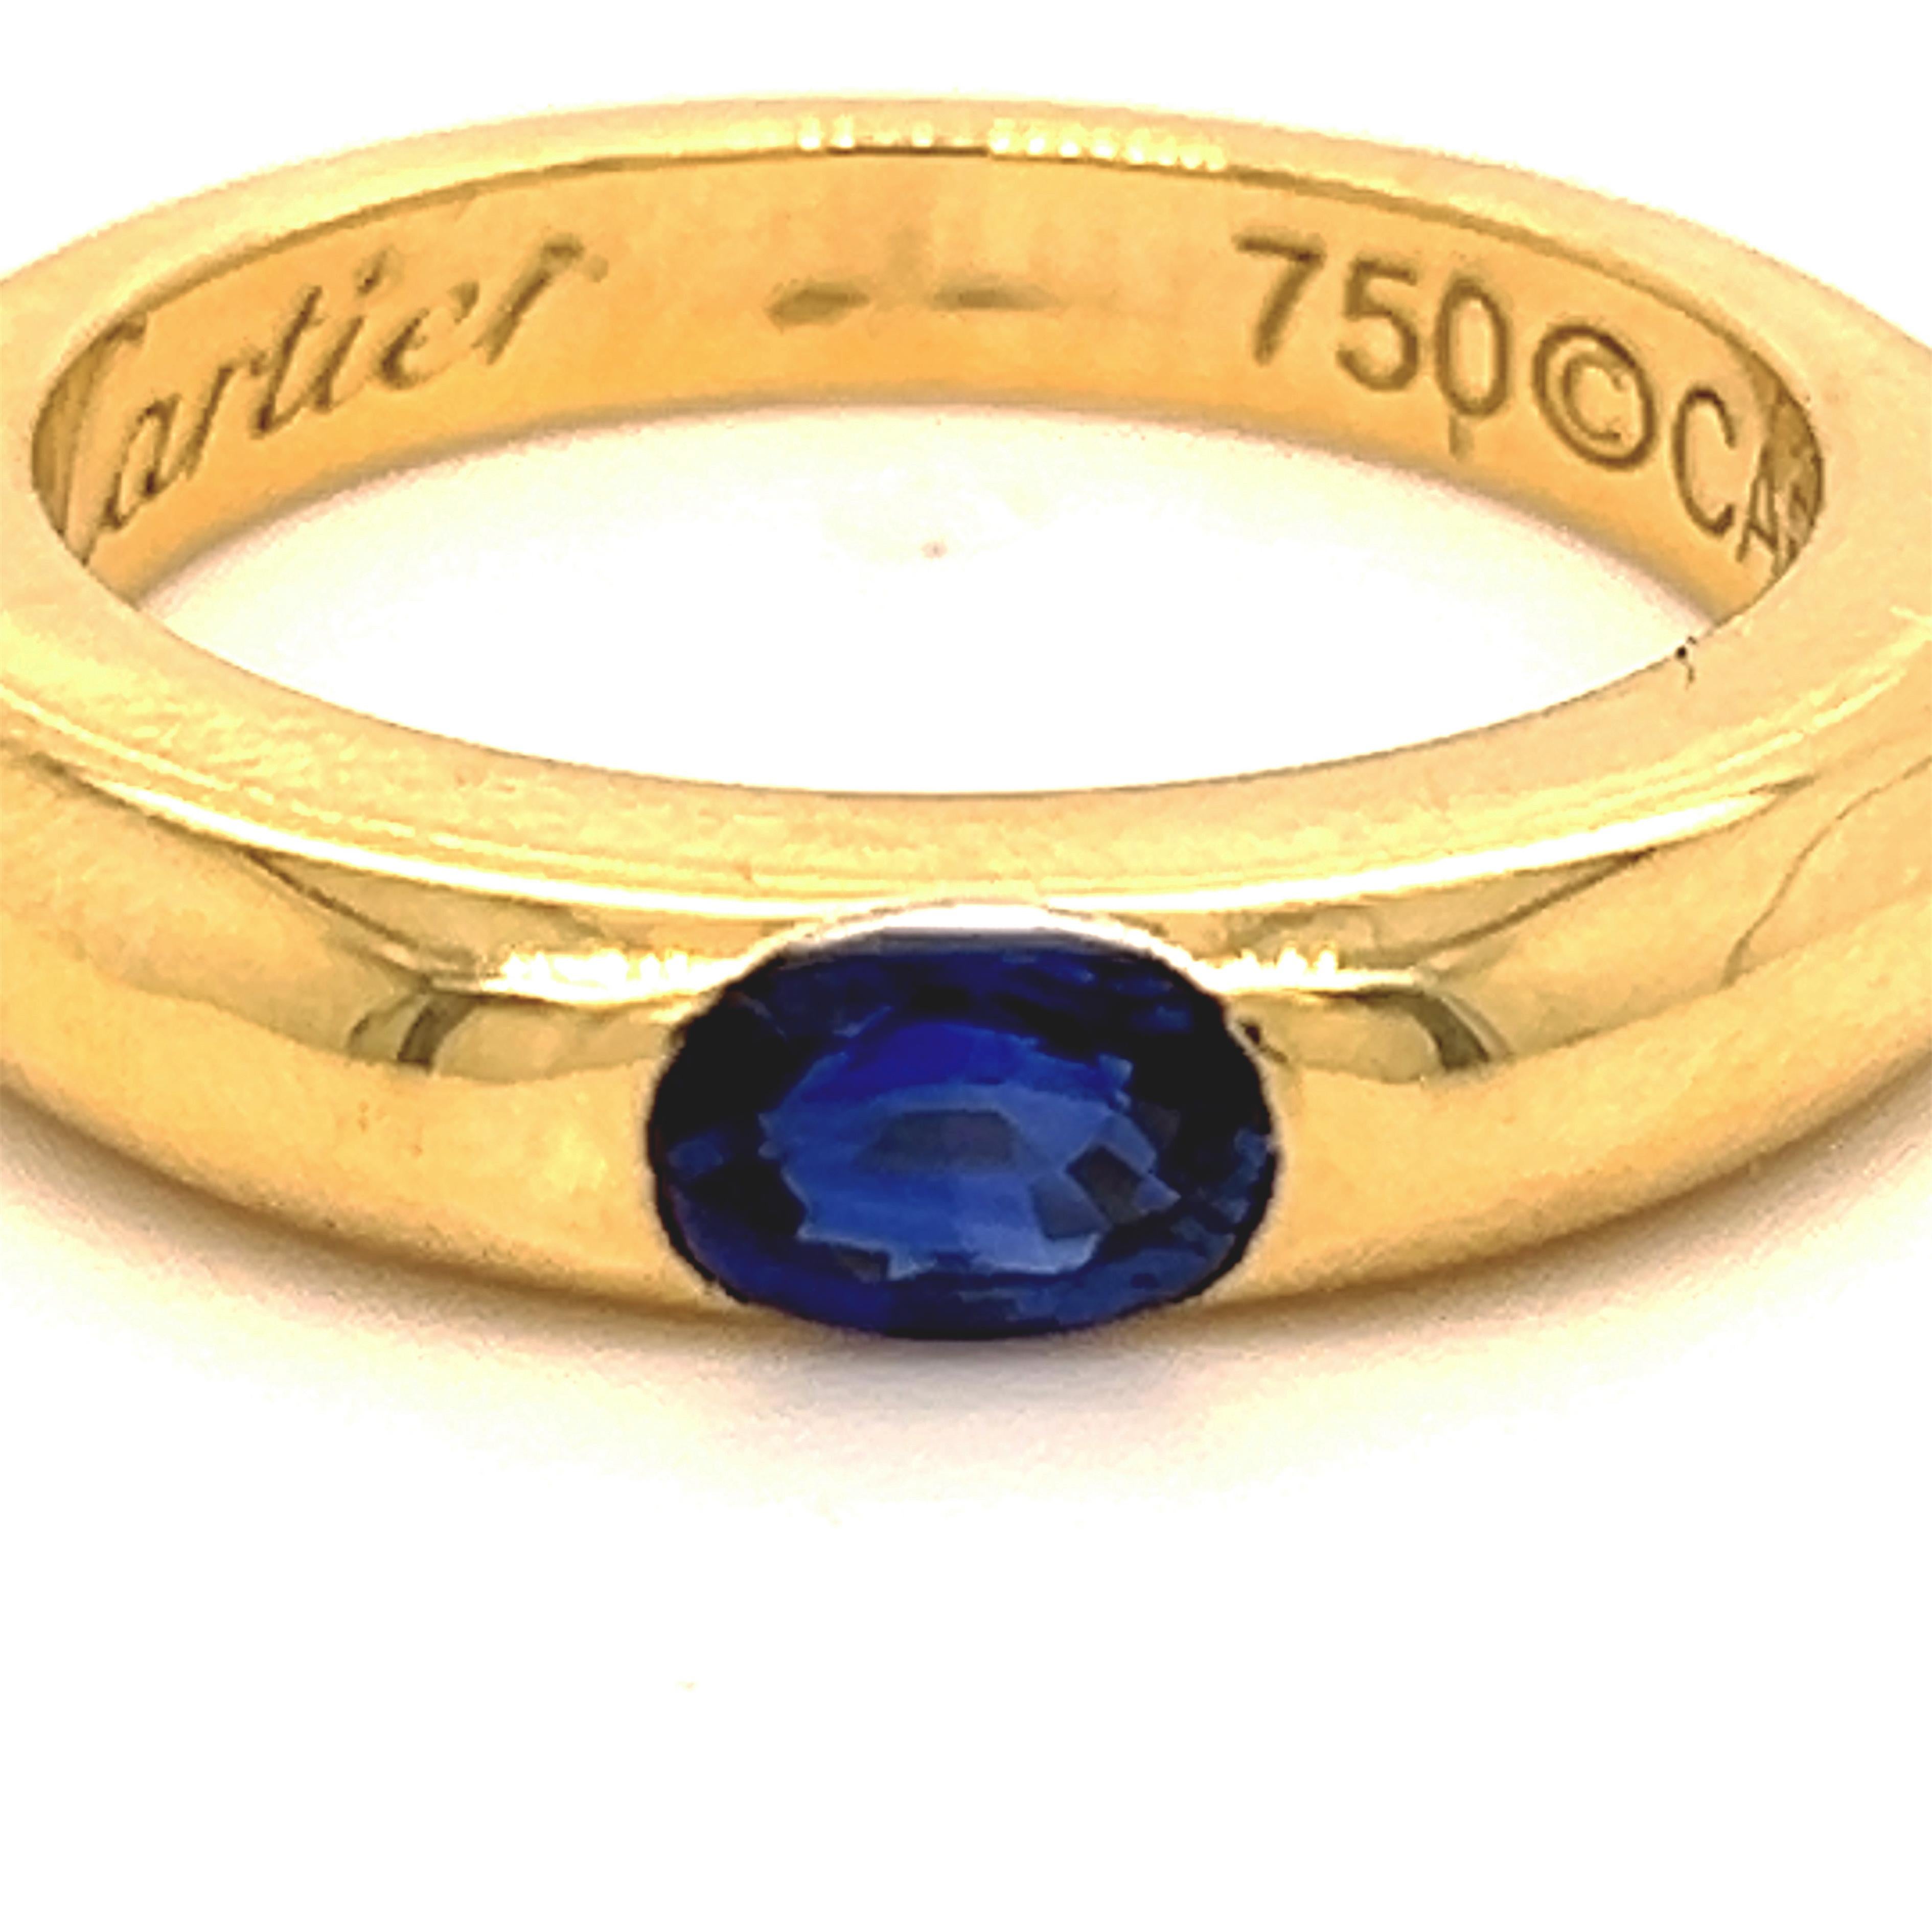 Original 1992, Cartier Oval Royal Blue Sapphire 18Kt Yellow Gold iconic Ellipse ring, French size 53, US Size 6 1/2.
Un très précieux saphir ovale de 0.71KT dans une bague en or jaune 18kt simple et indémodable. 
D'une grâce et d'une sophistication